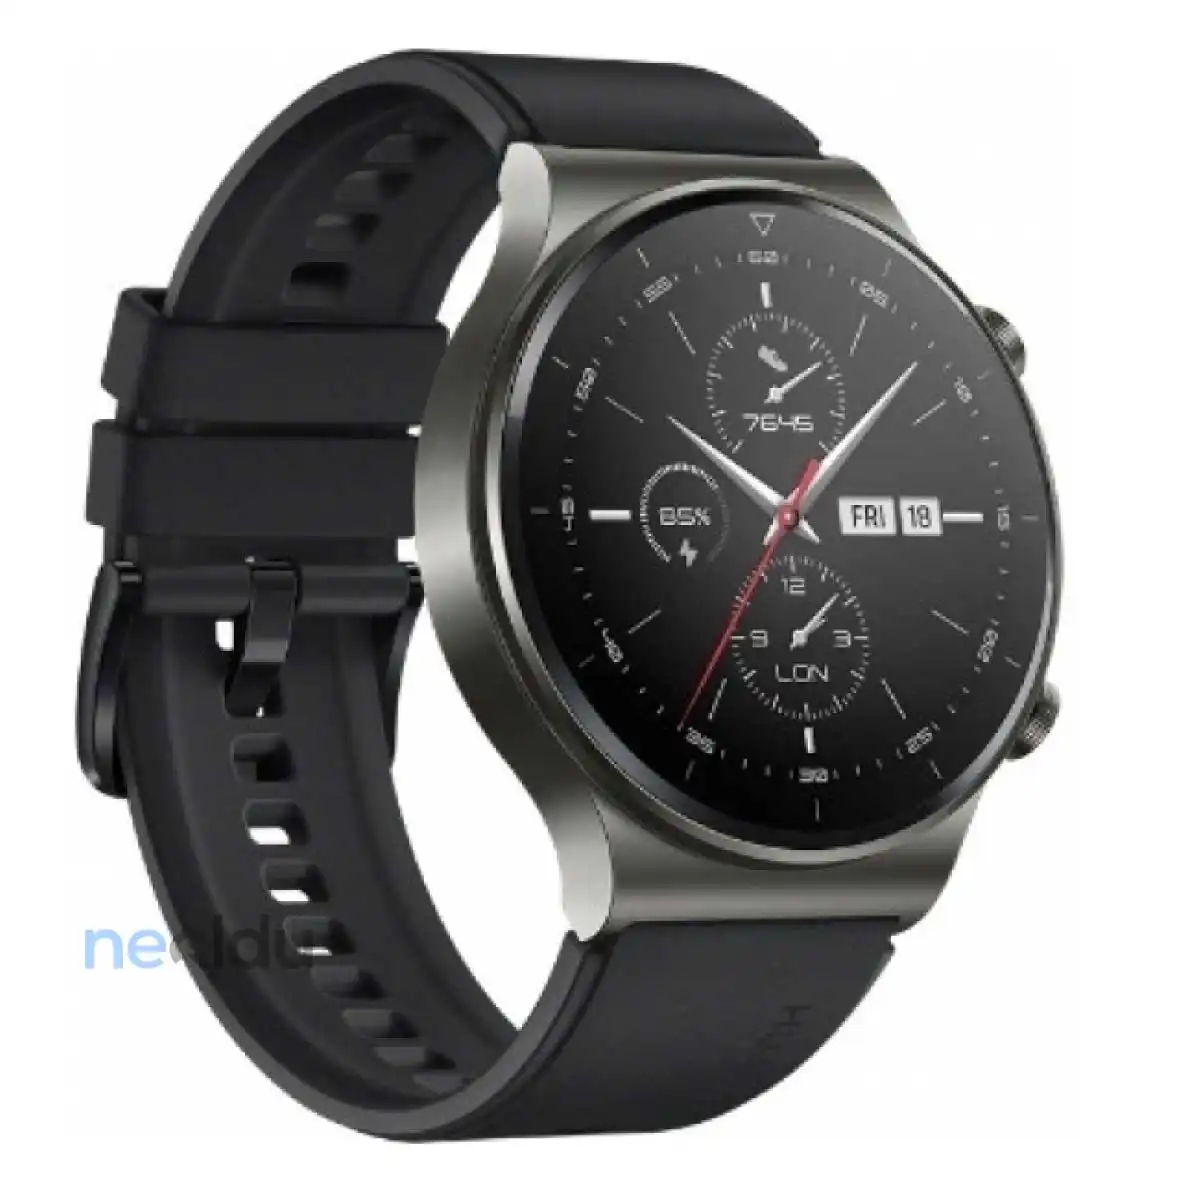 Huawei Watch GT 2 İnceleme